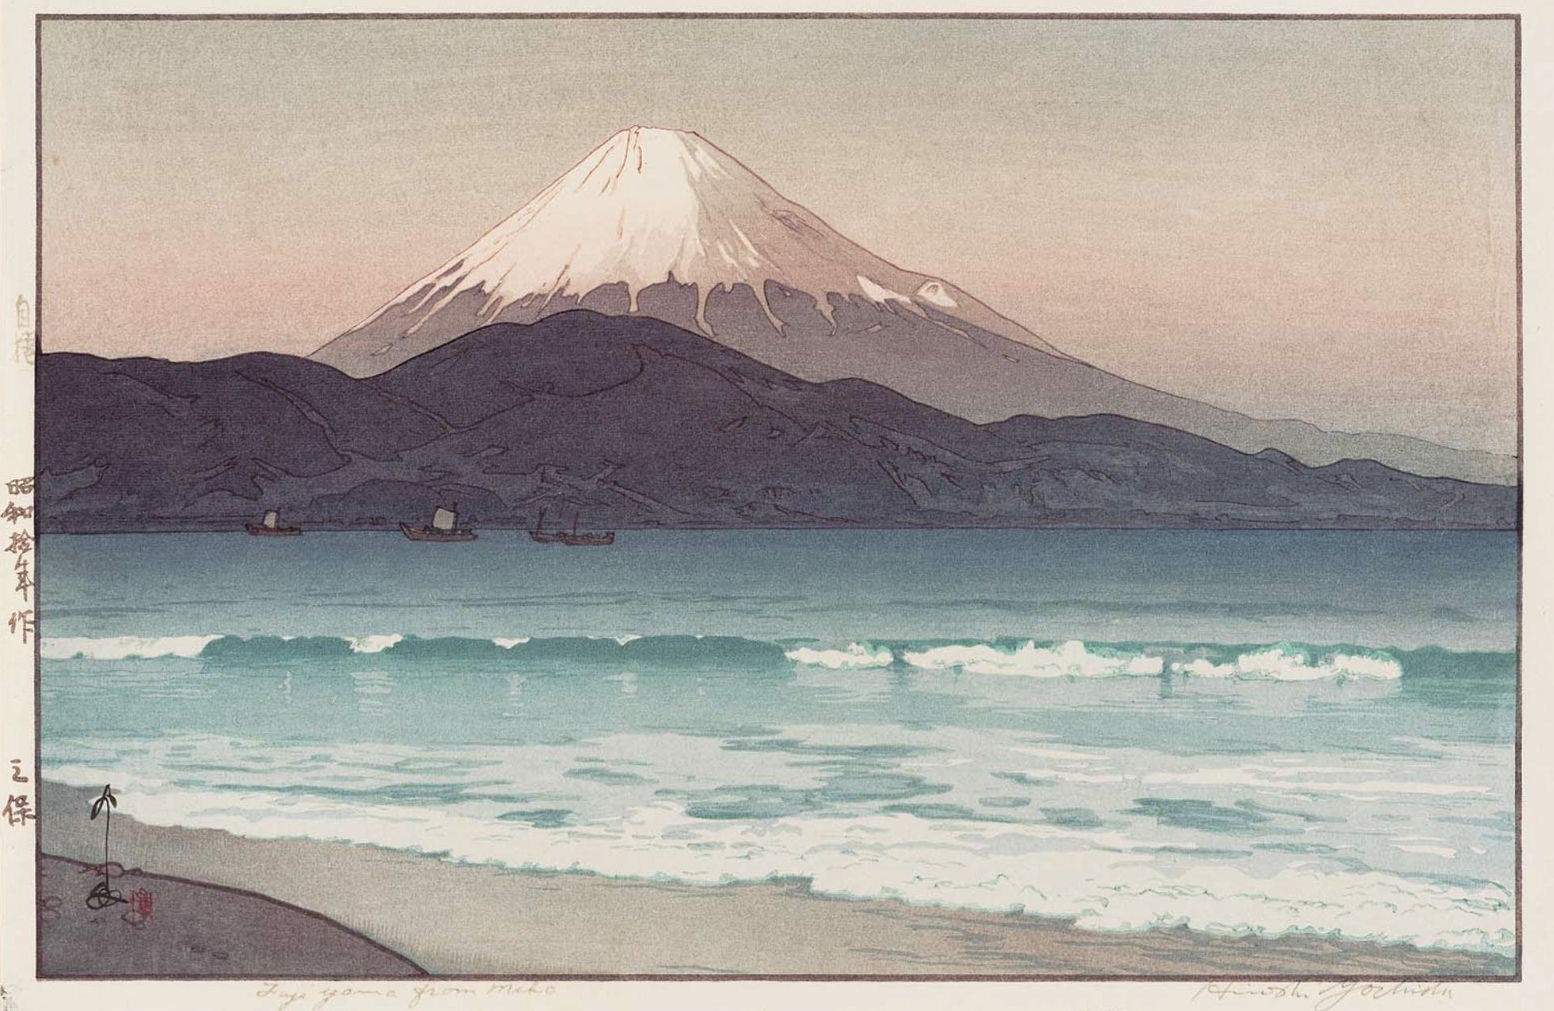 Hiroshi Yoshida “Fujiyama from Miho” 1935 woodblock print